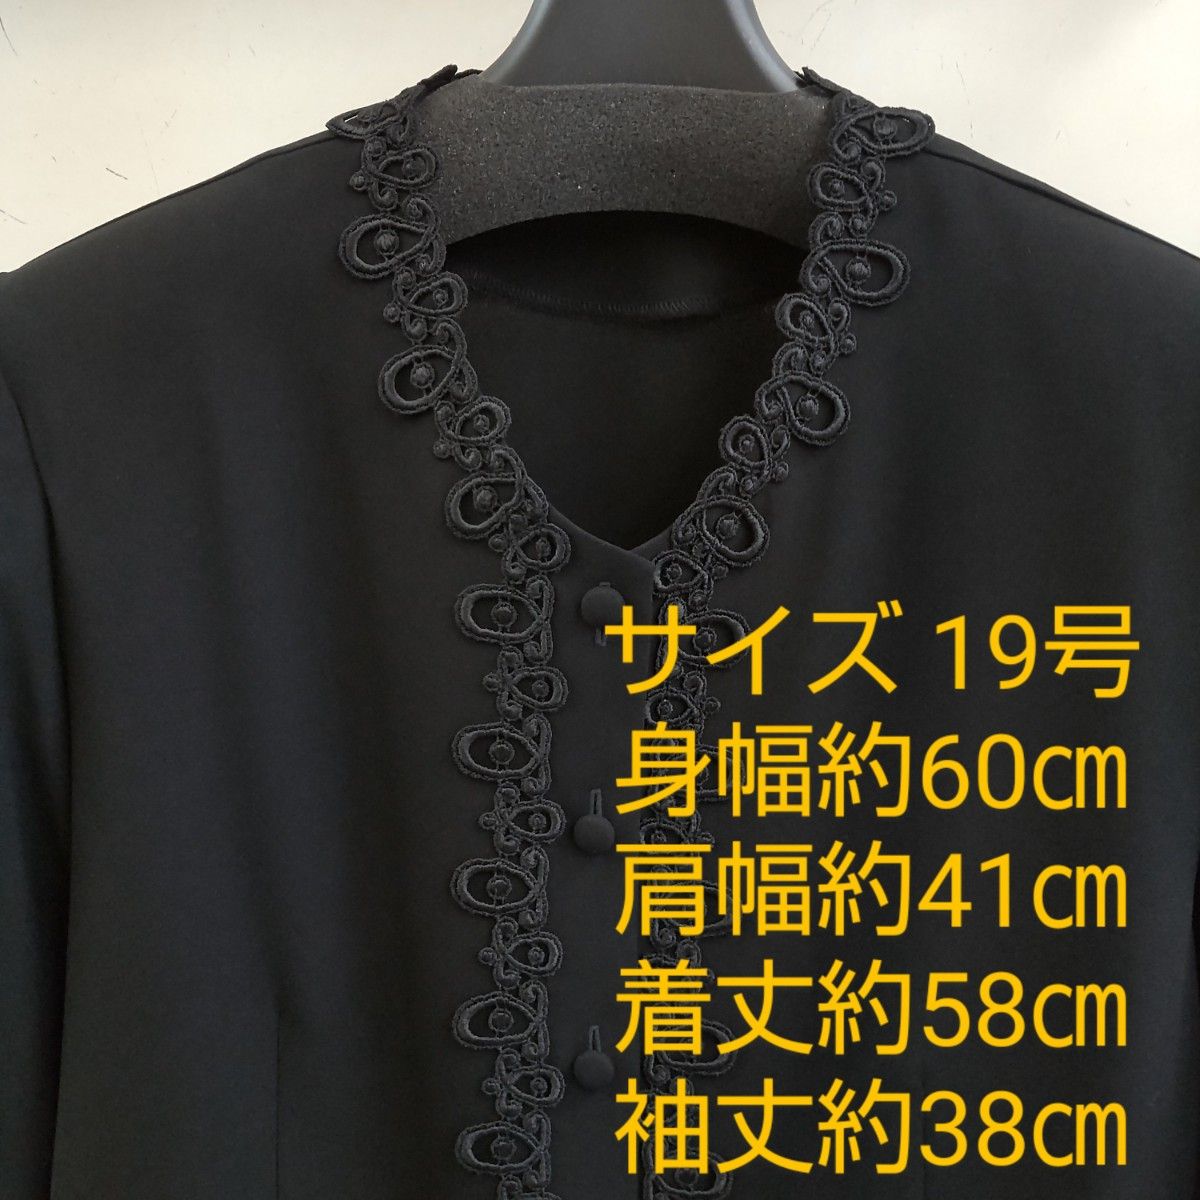 黒ブラウス 19号   礼服 フォーマル 法事  ☆人気の品です。  No.33